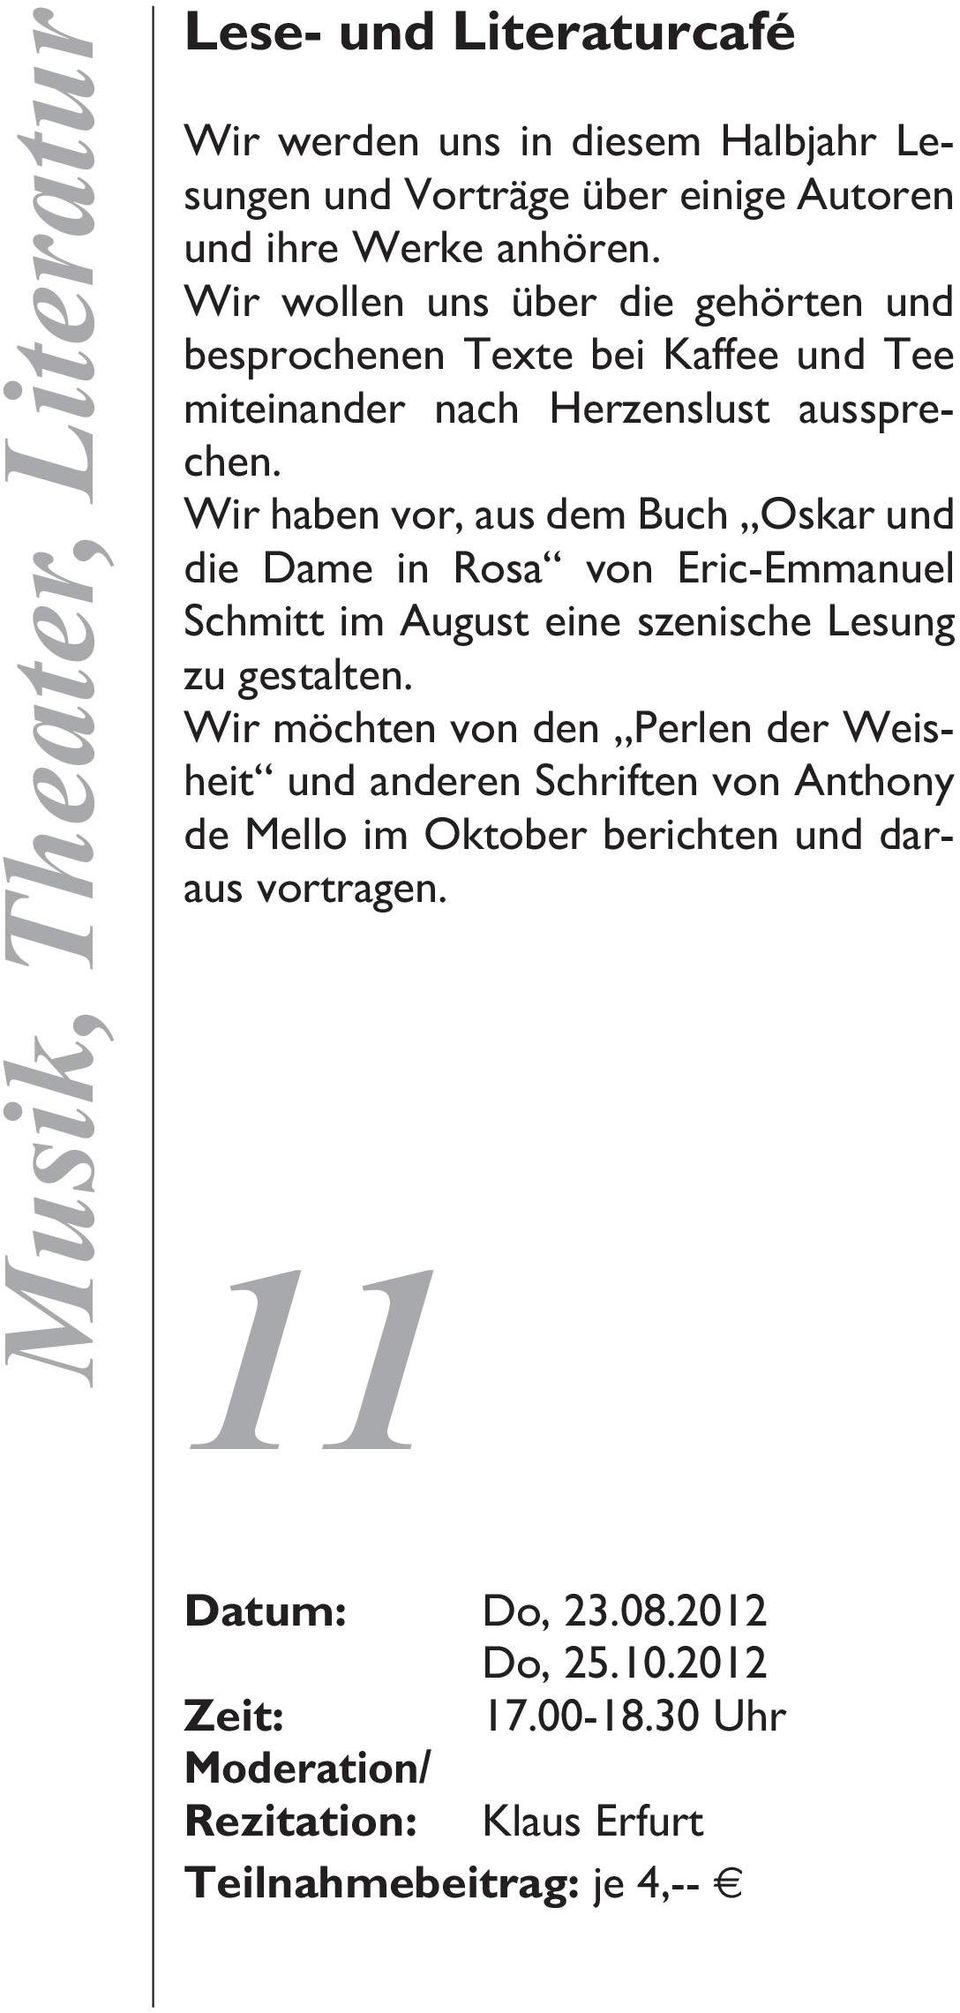 Wir haben vor, aus dem Buch Oskar und die Dame in Rosa von Eric-Emmanuel Schmitt im August eine szenische Lesung zu gestalten.